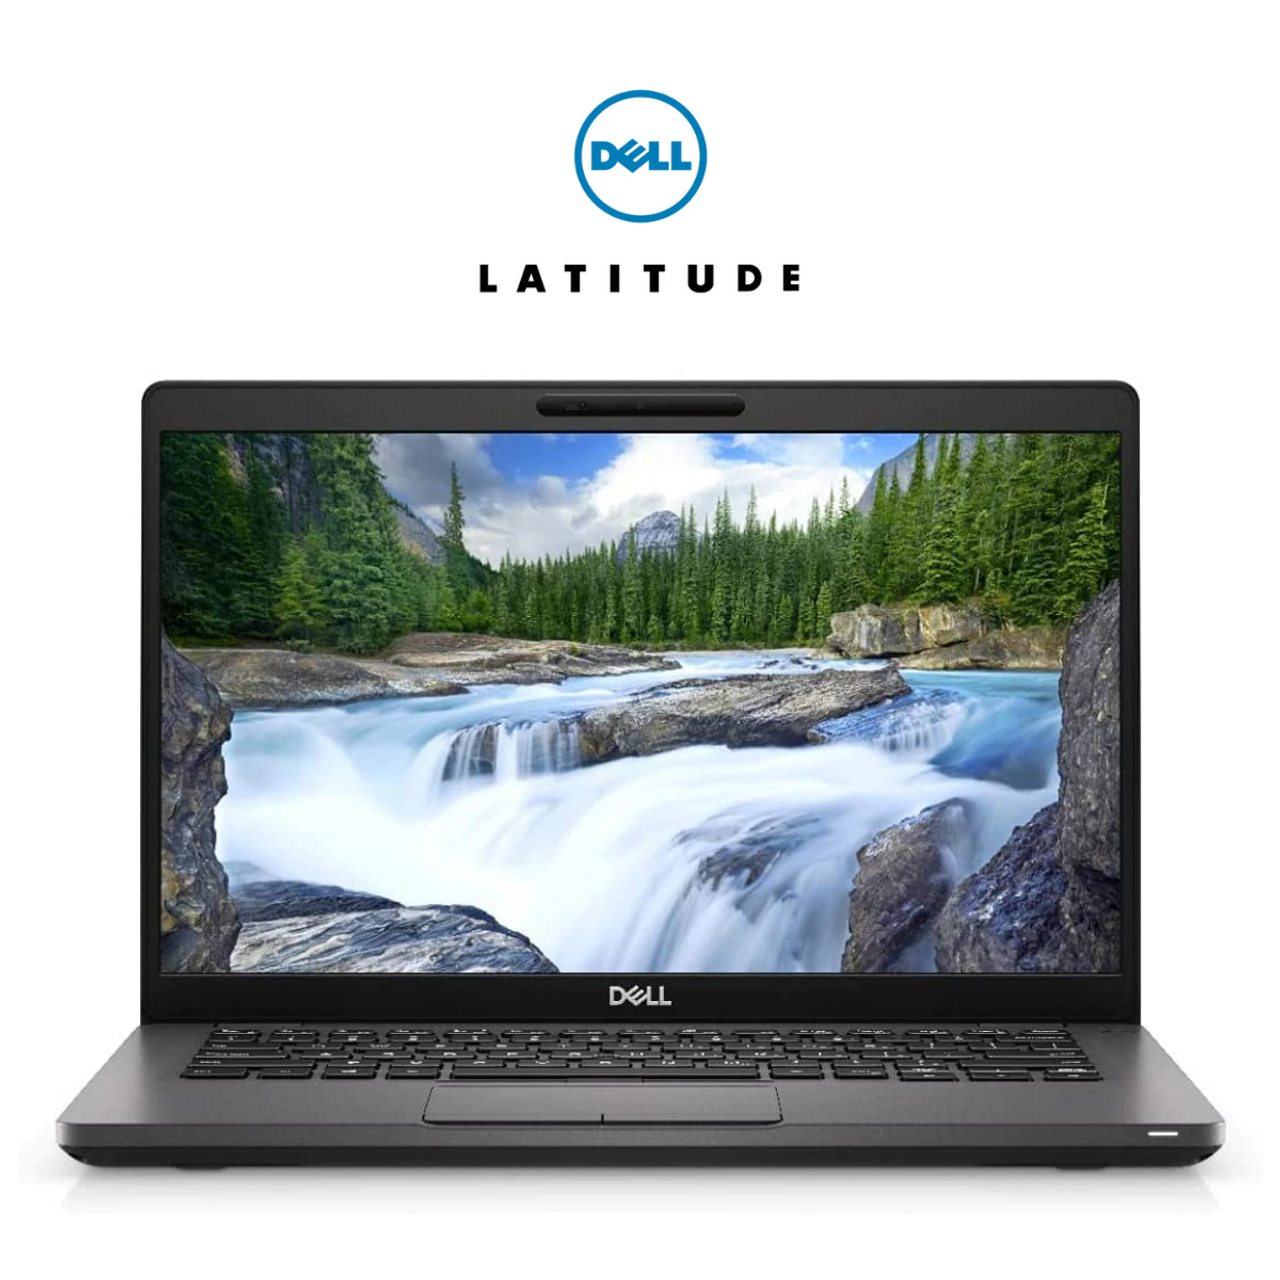 Dell Latitude 5400 Core i7 256GB SSD 16GB RAM Win 10 product image